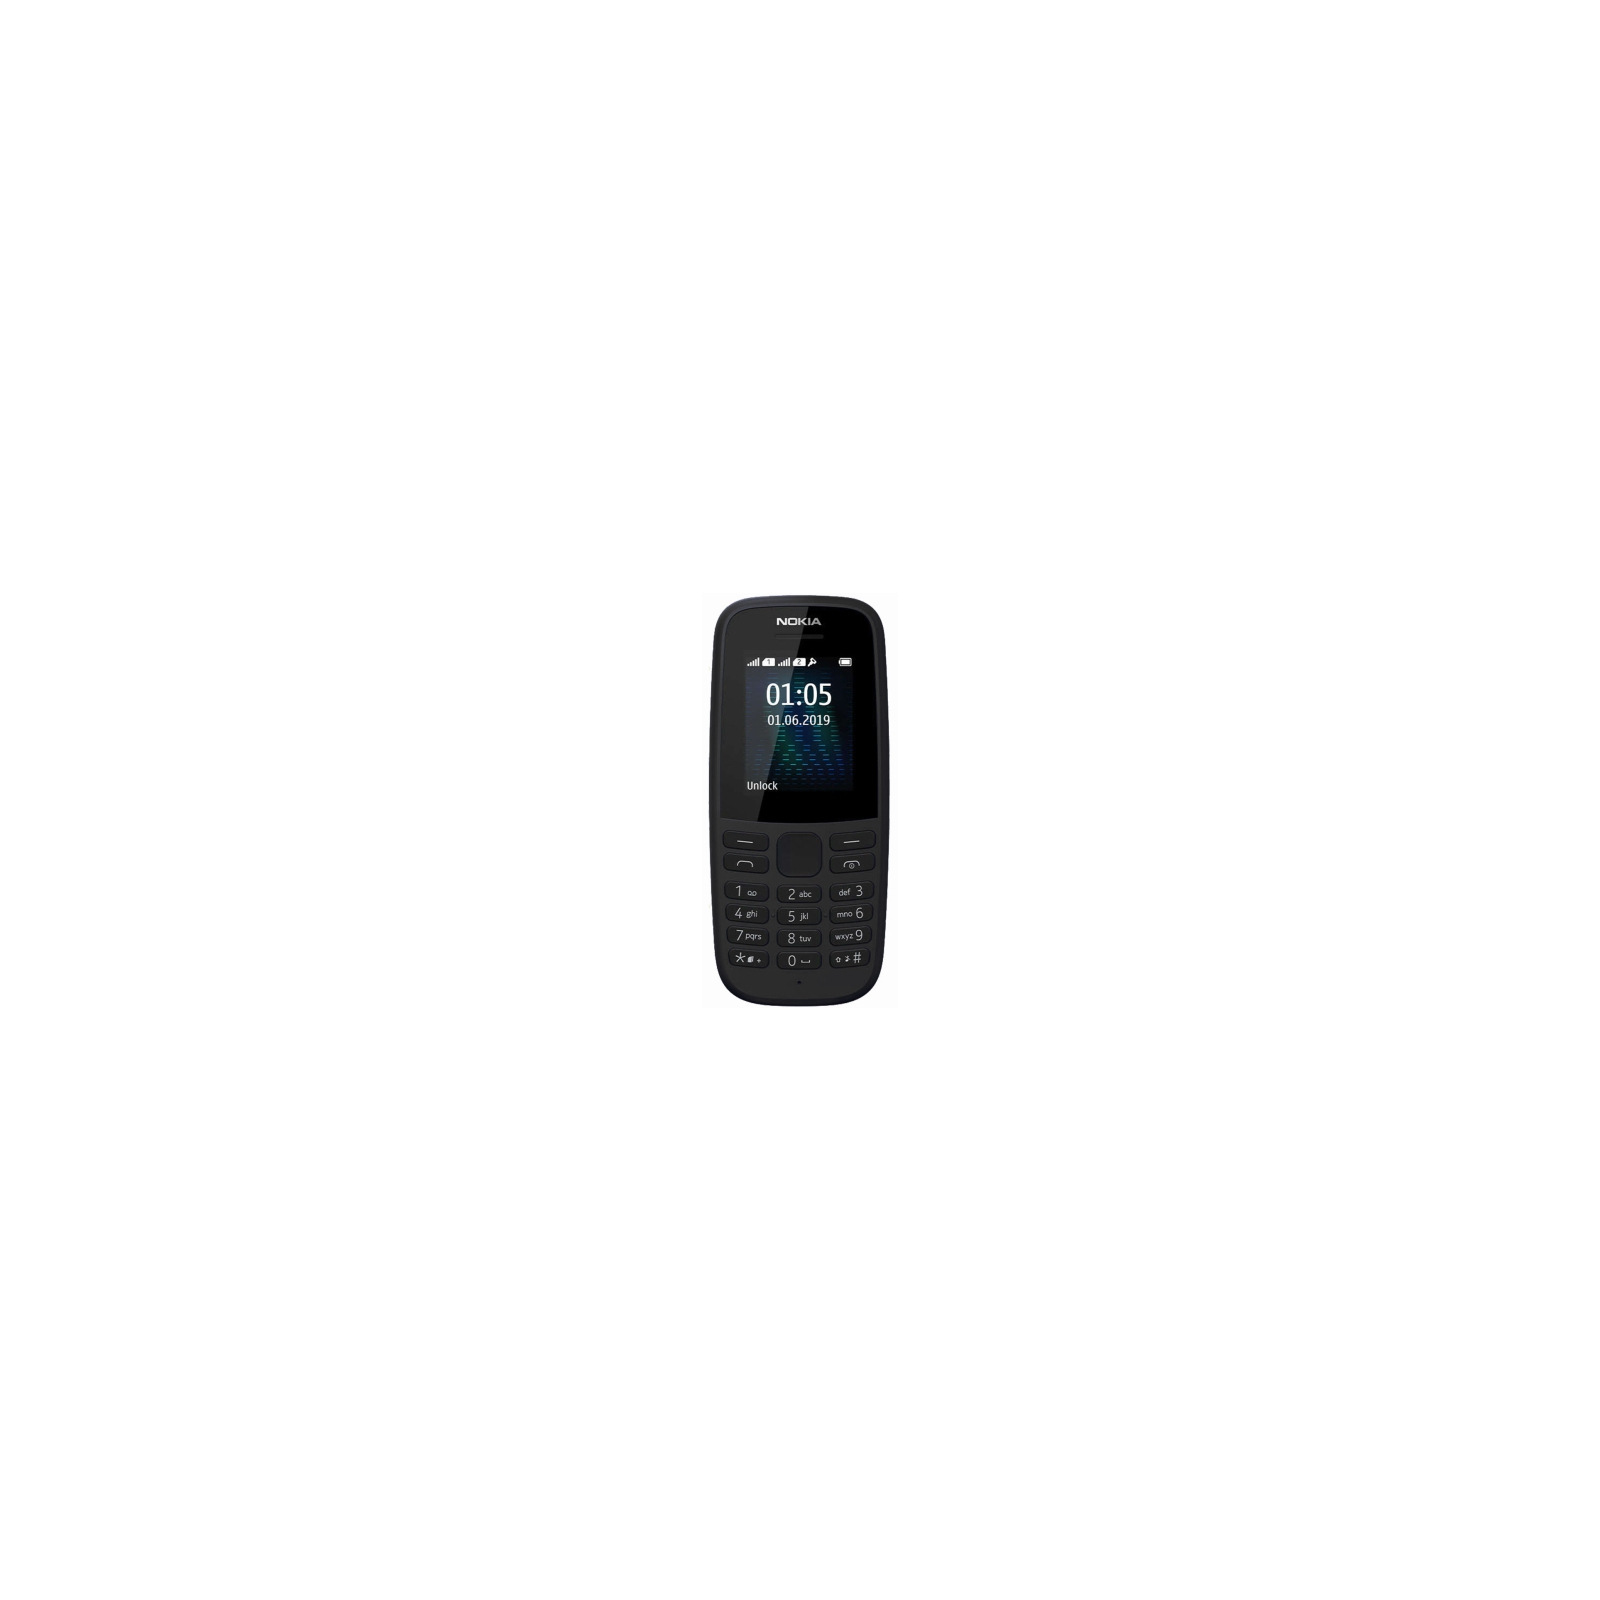 Мобильный телефон Nokia 105 SS 2019 Blue (16KIGL01A13) изображение 2